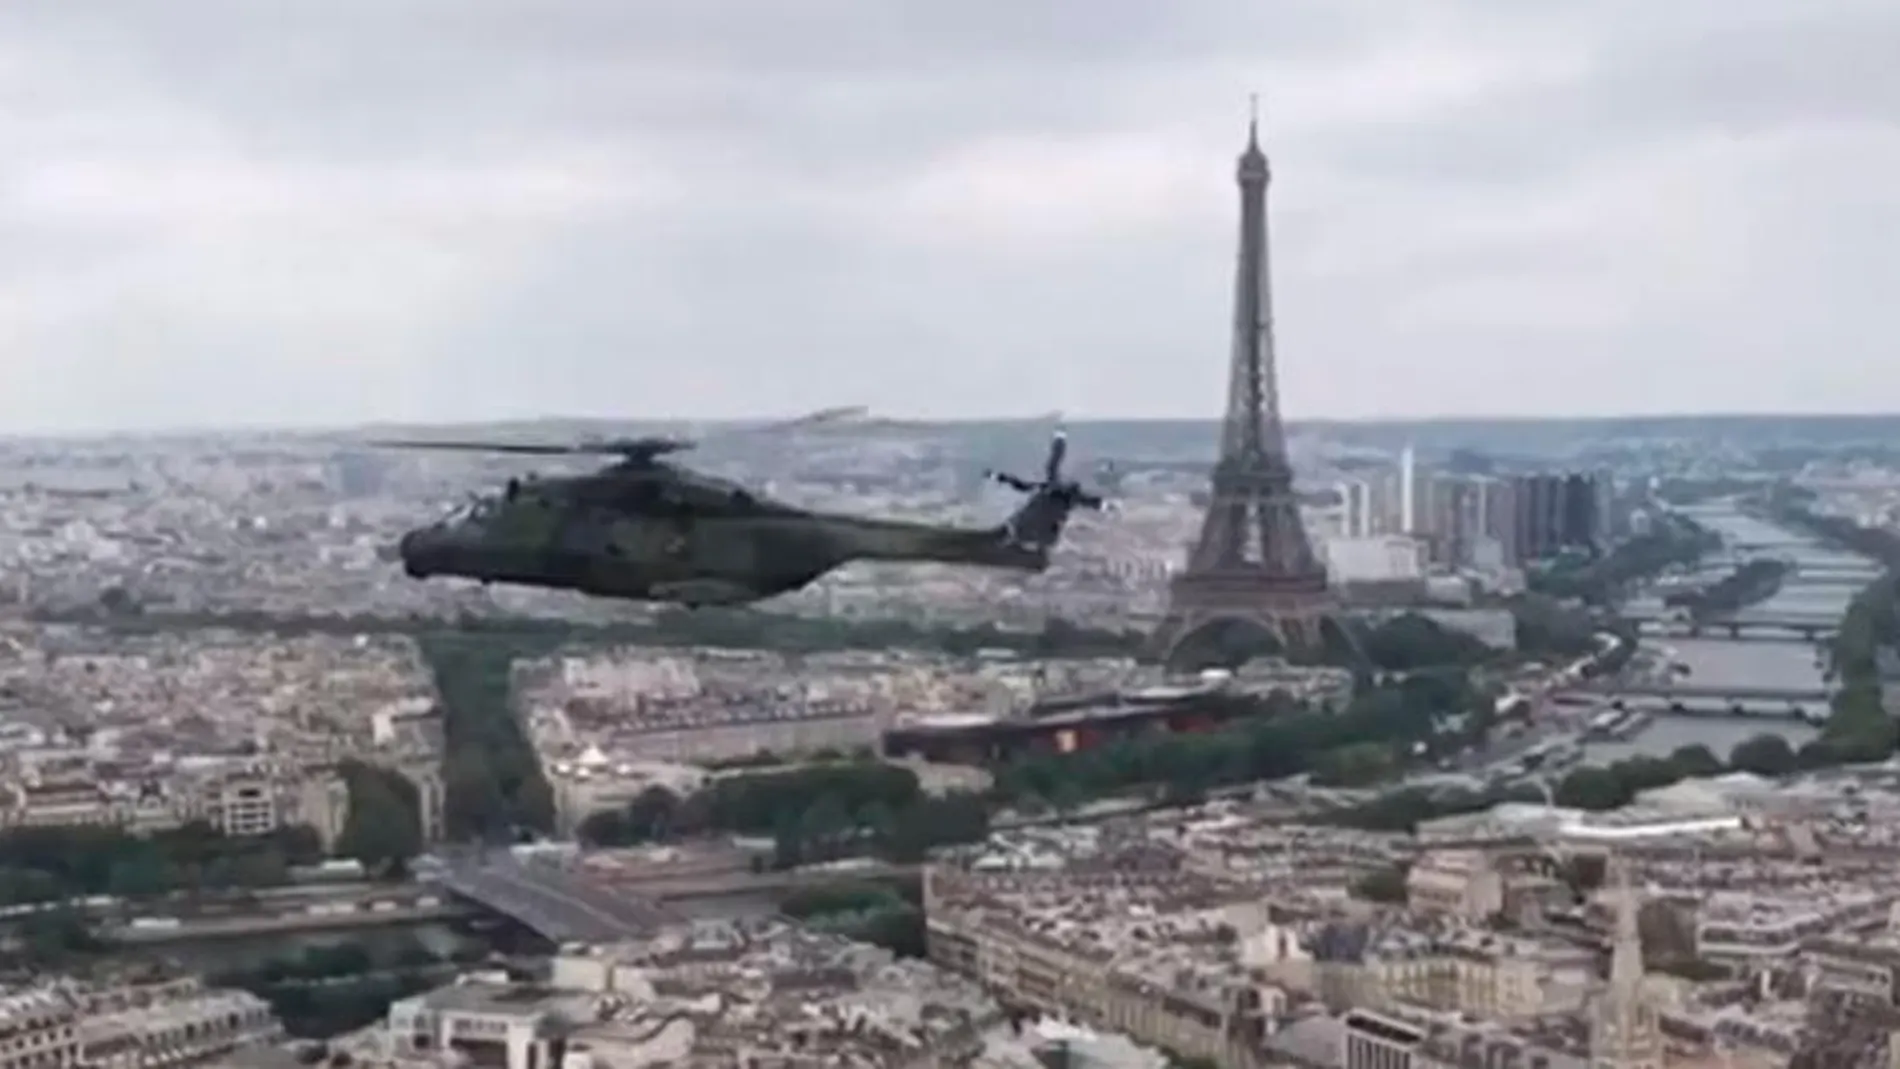 Imagen de la Torre Eiffel y del Sena desde uno de los helicópteros de las FAMET. (Foto: Ejército de Tierra)